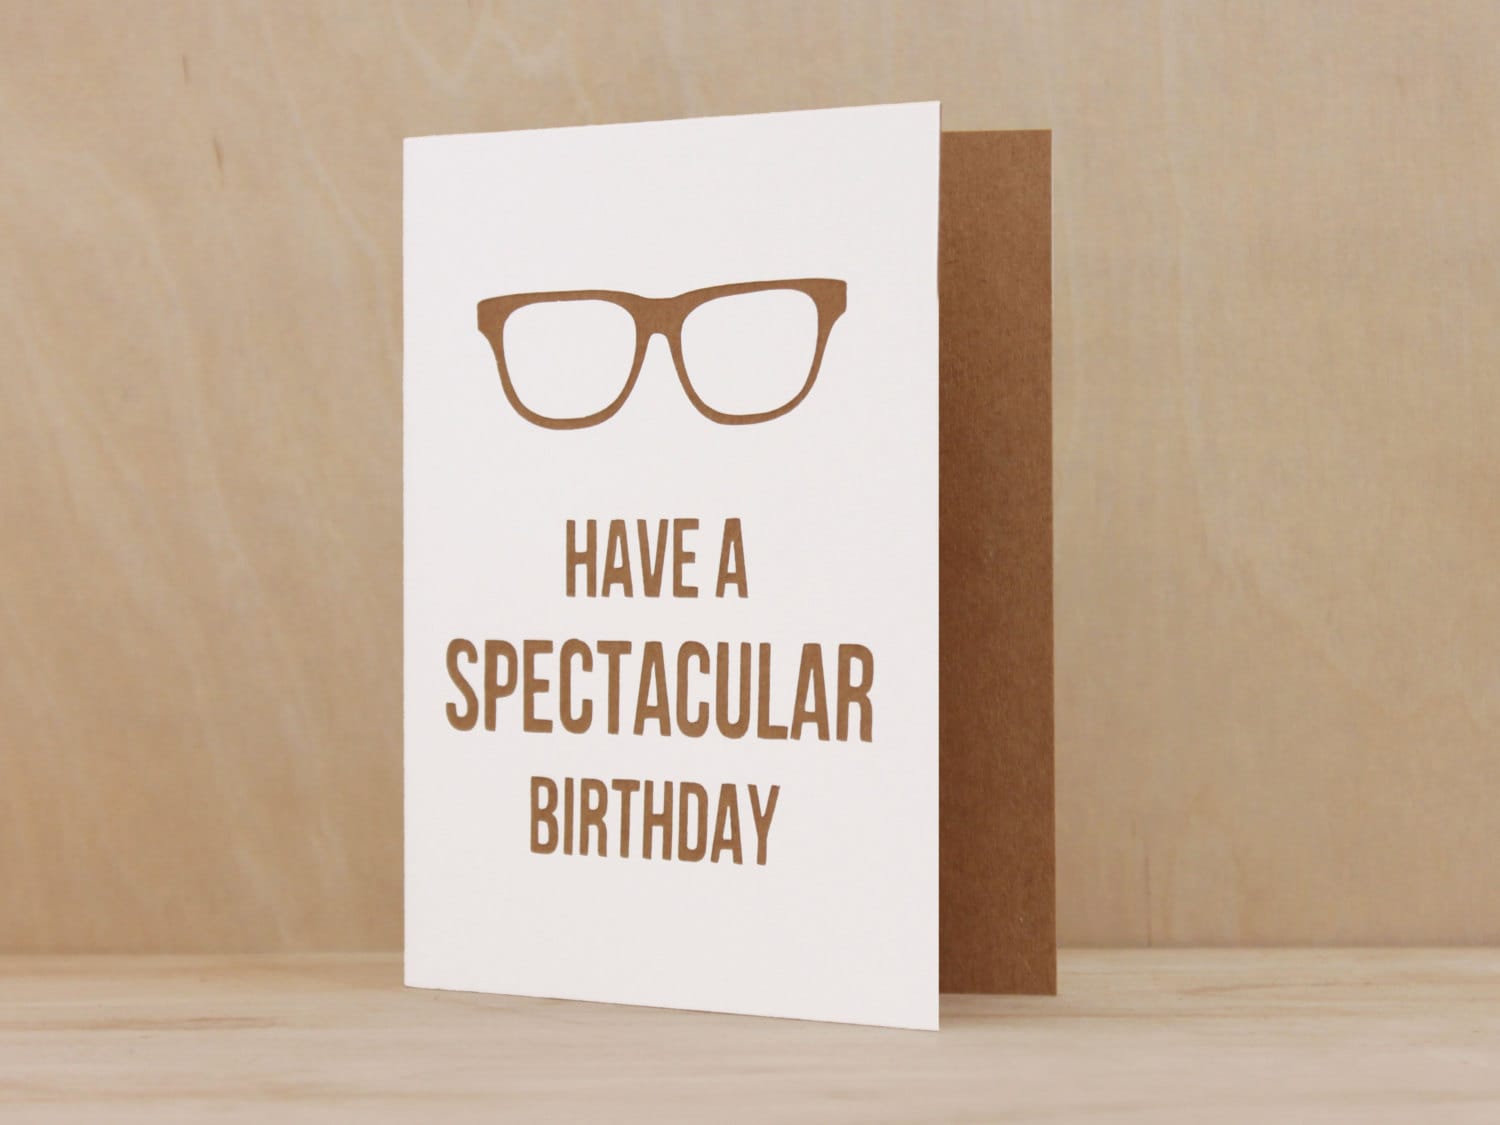 SPECTACULAR BIRTHDAY // Birthday Card by TheLemonPressShop on Etsy